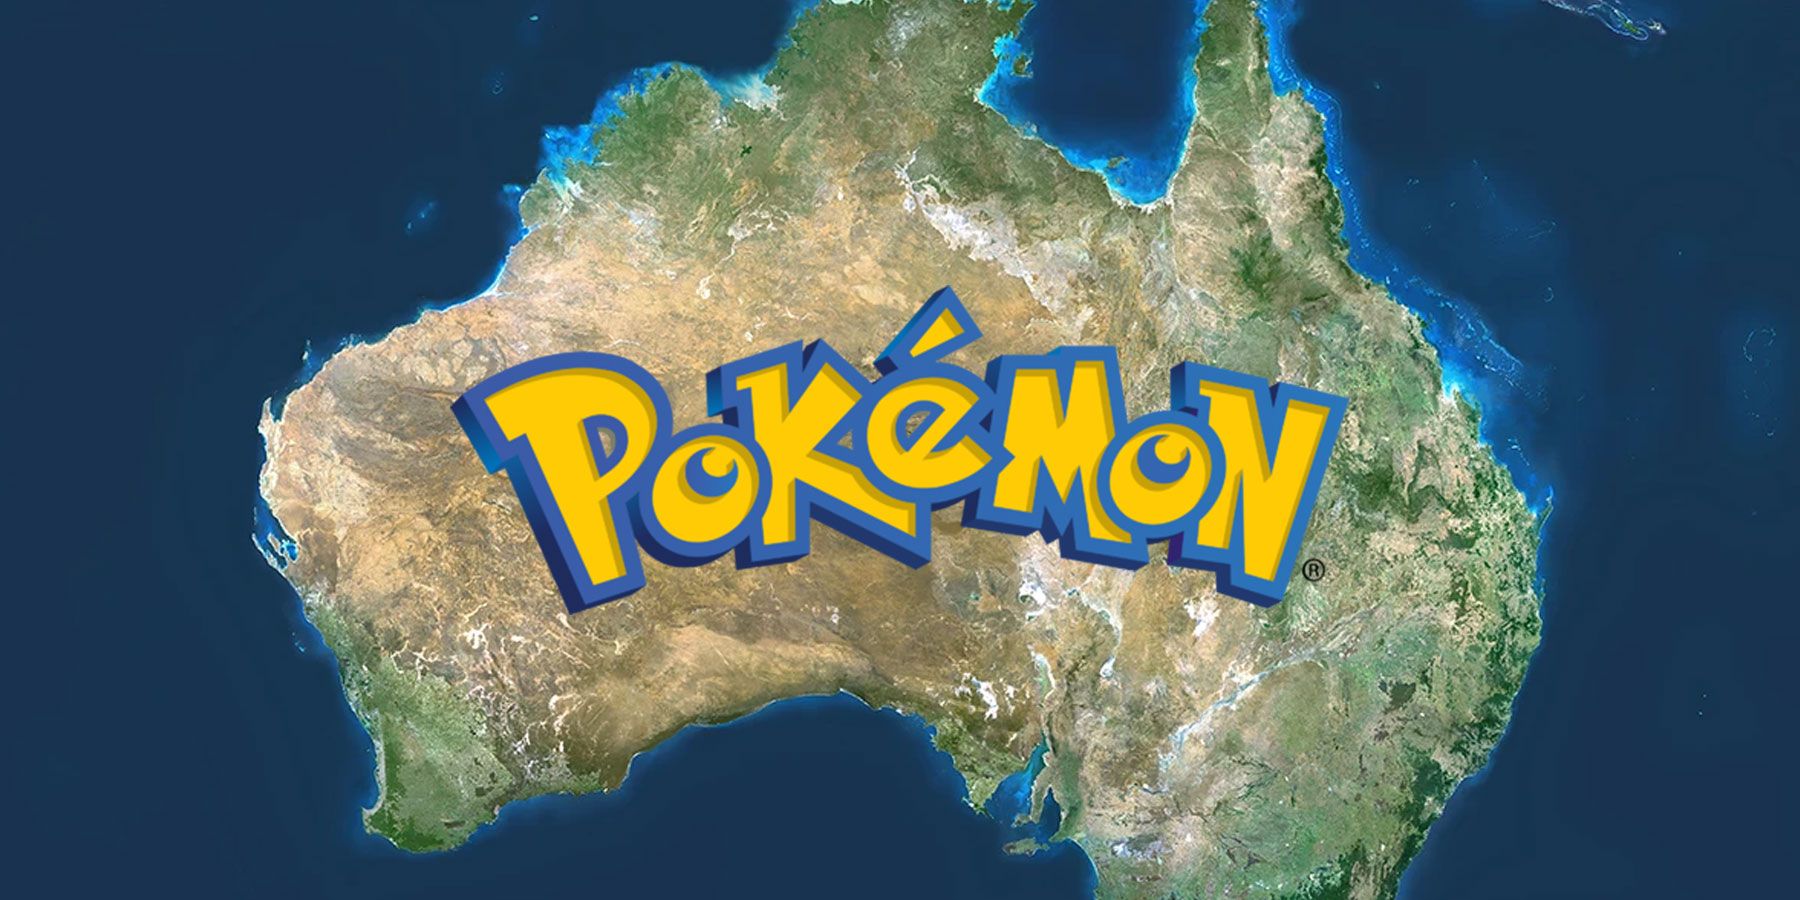 אוסטרליה יכולה להיות ההגדרה המושלמת למשחק פוקימון חדש